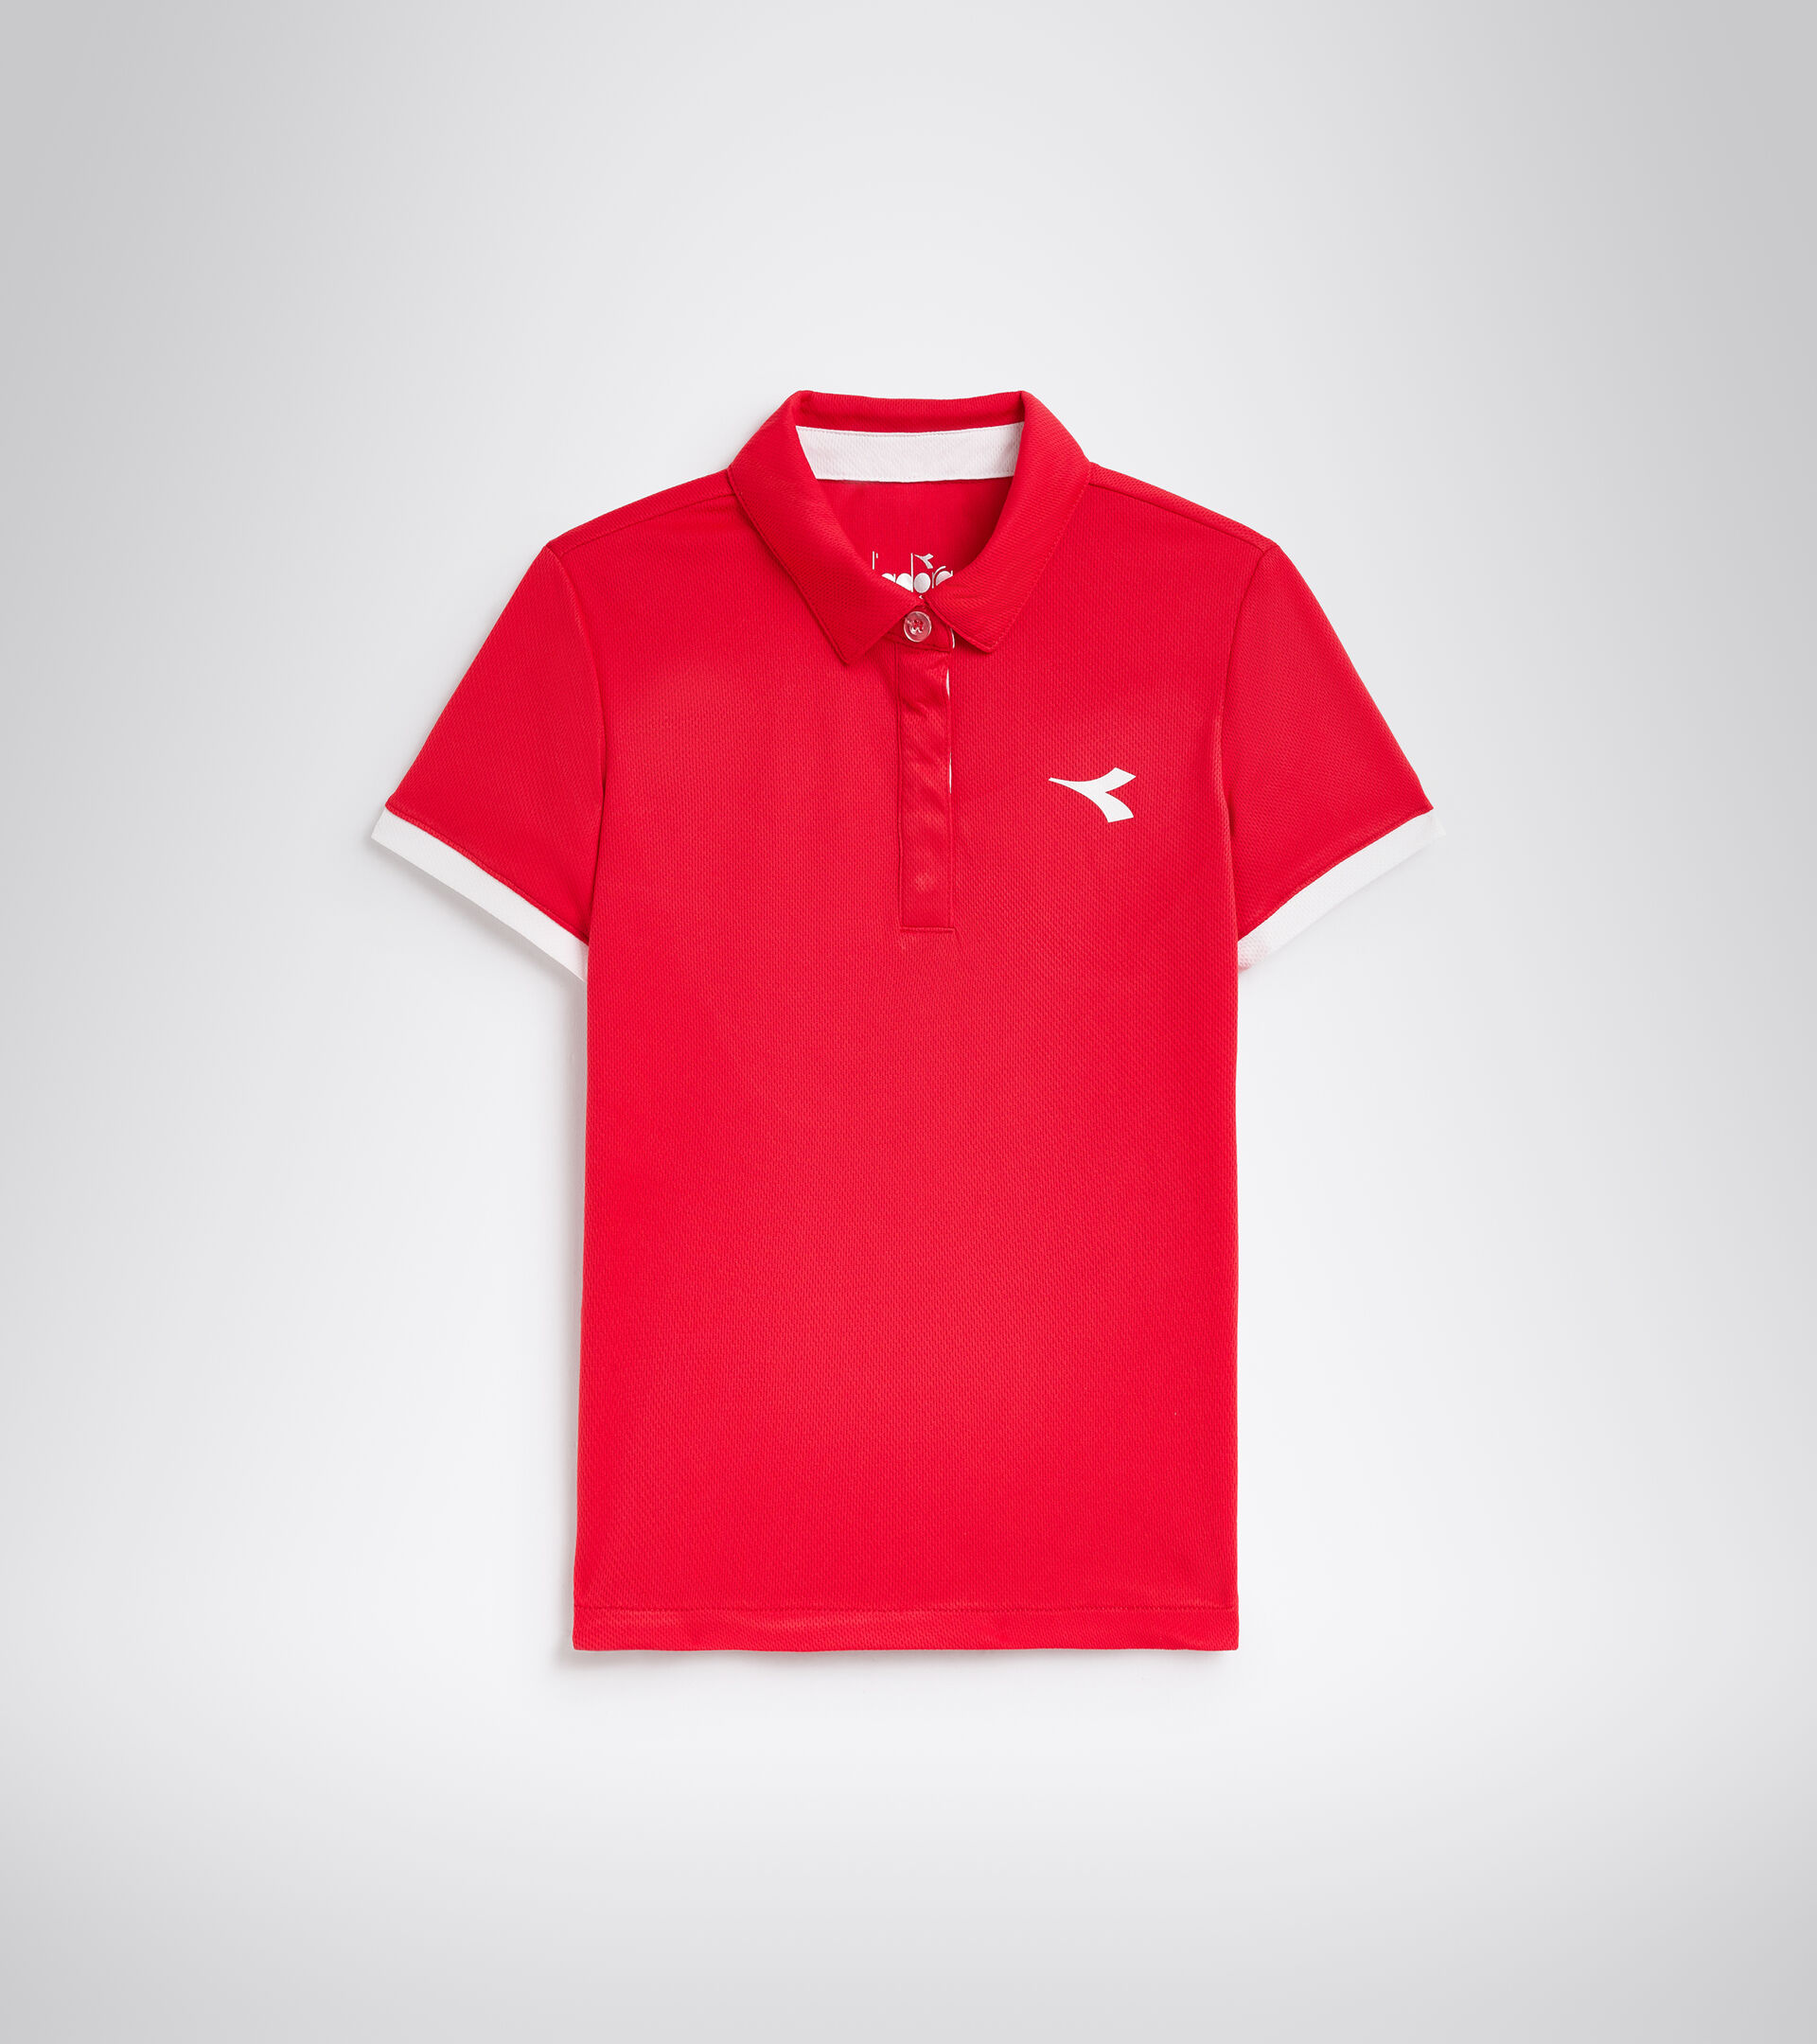 Tennis polo shirt - Junior G. POLO COURT TOMATO RED - Diadora